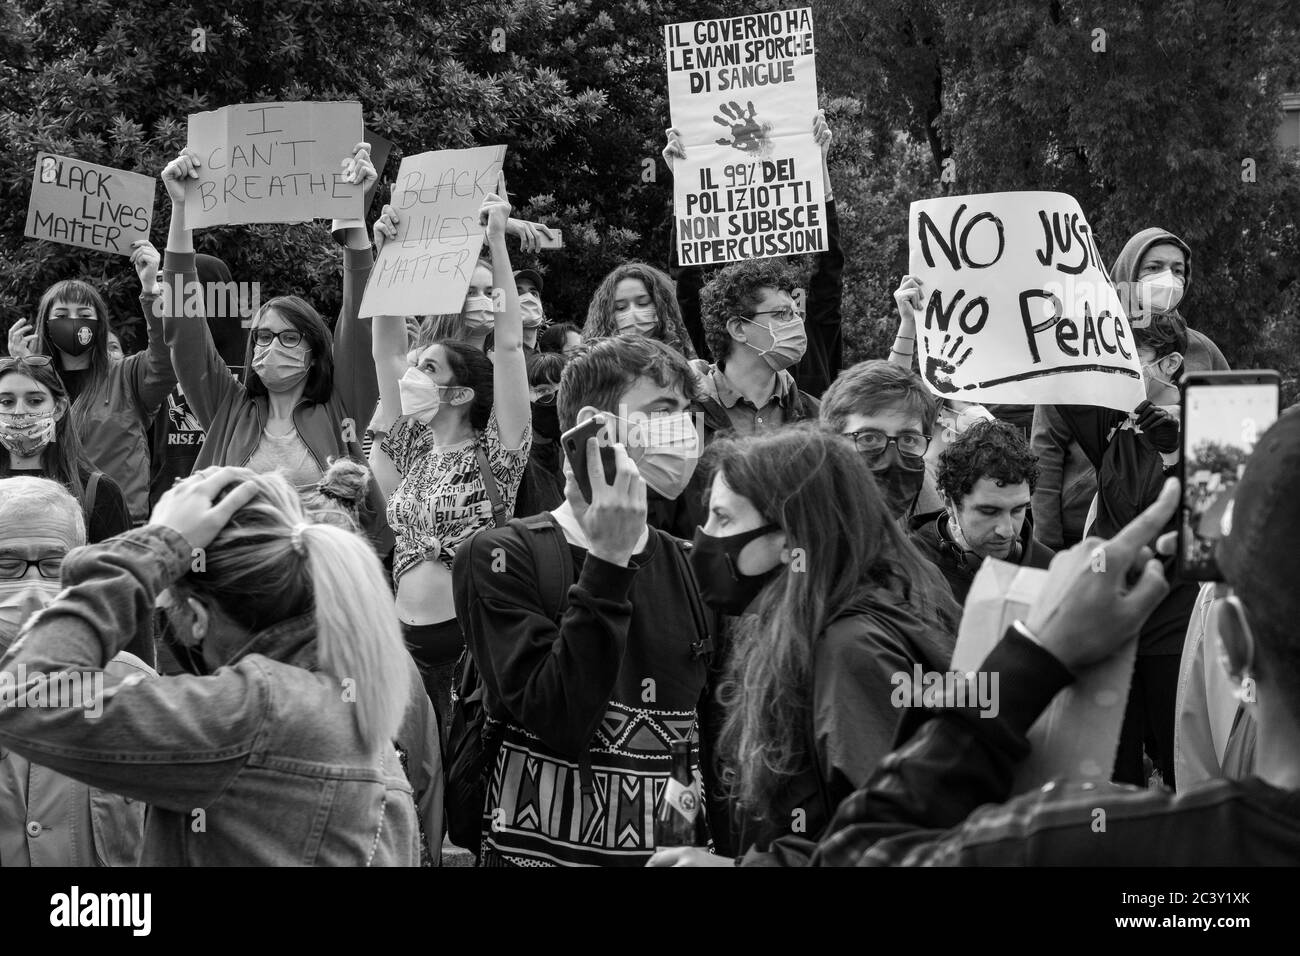 Giovani manifestanti che tengono cartelli 'Nessuna giustizia. Nessuna pace', 'non posso respirare', 'BLM' durante l'assemblea di protesta in solidarietà al movimento BLM. Foto Stock